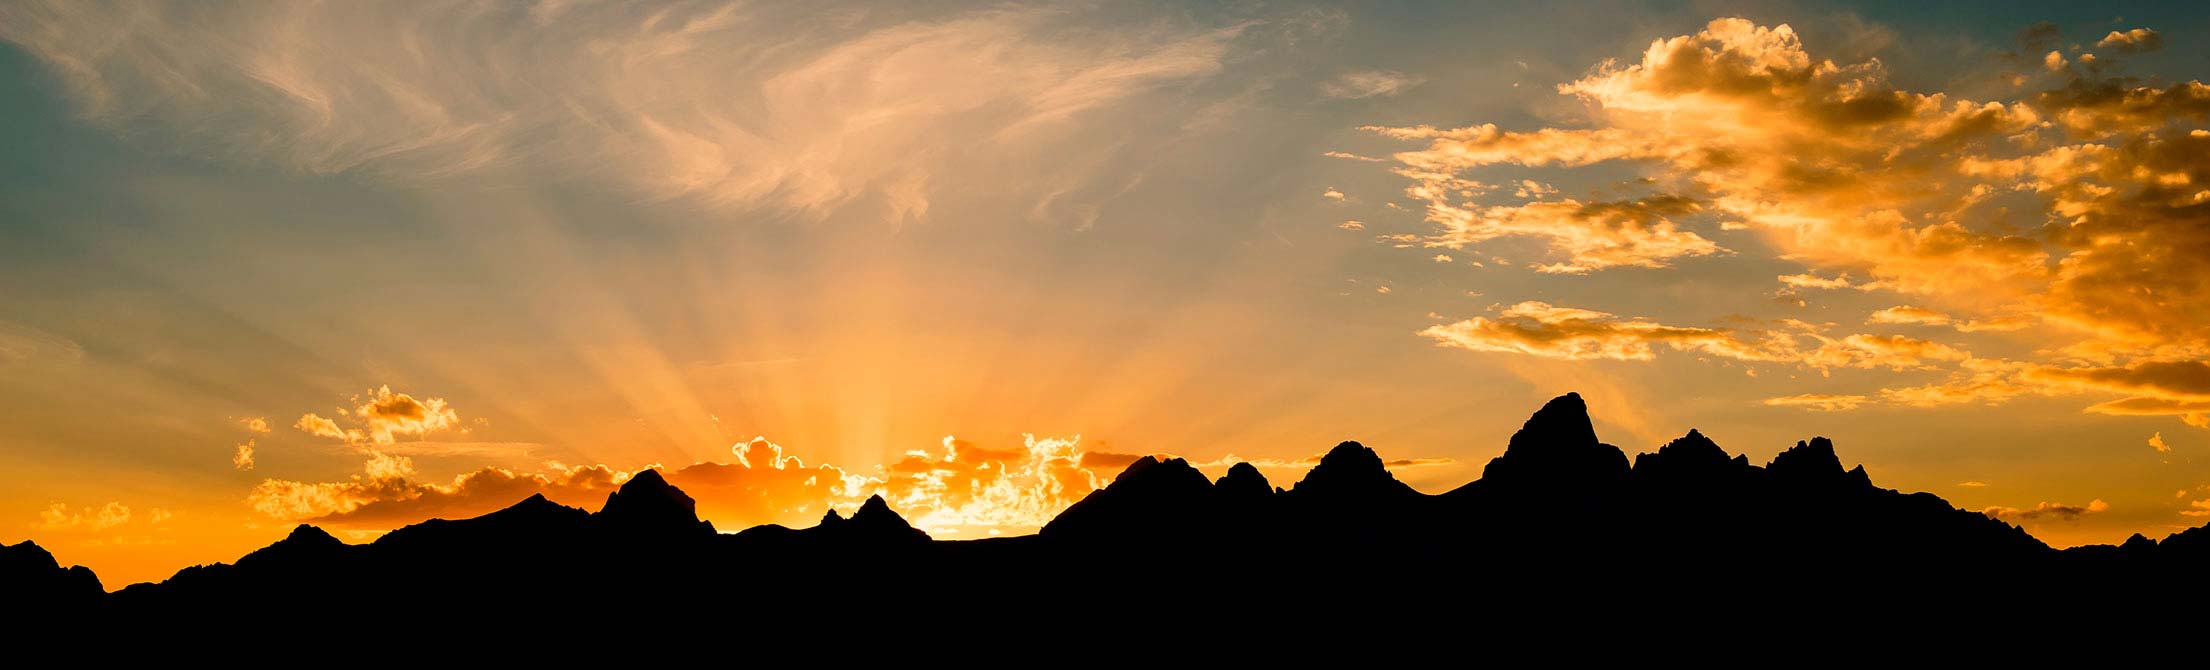 Sunset at Teton range